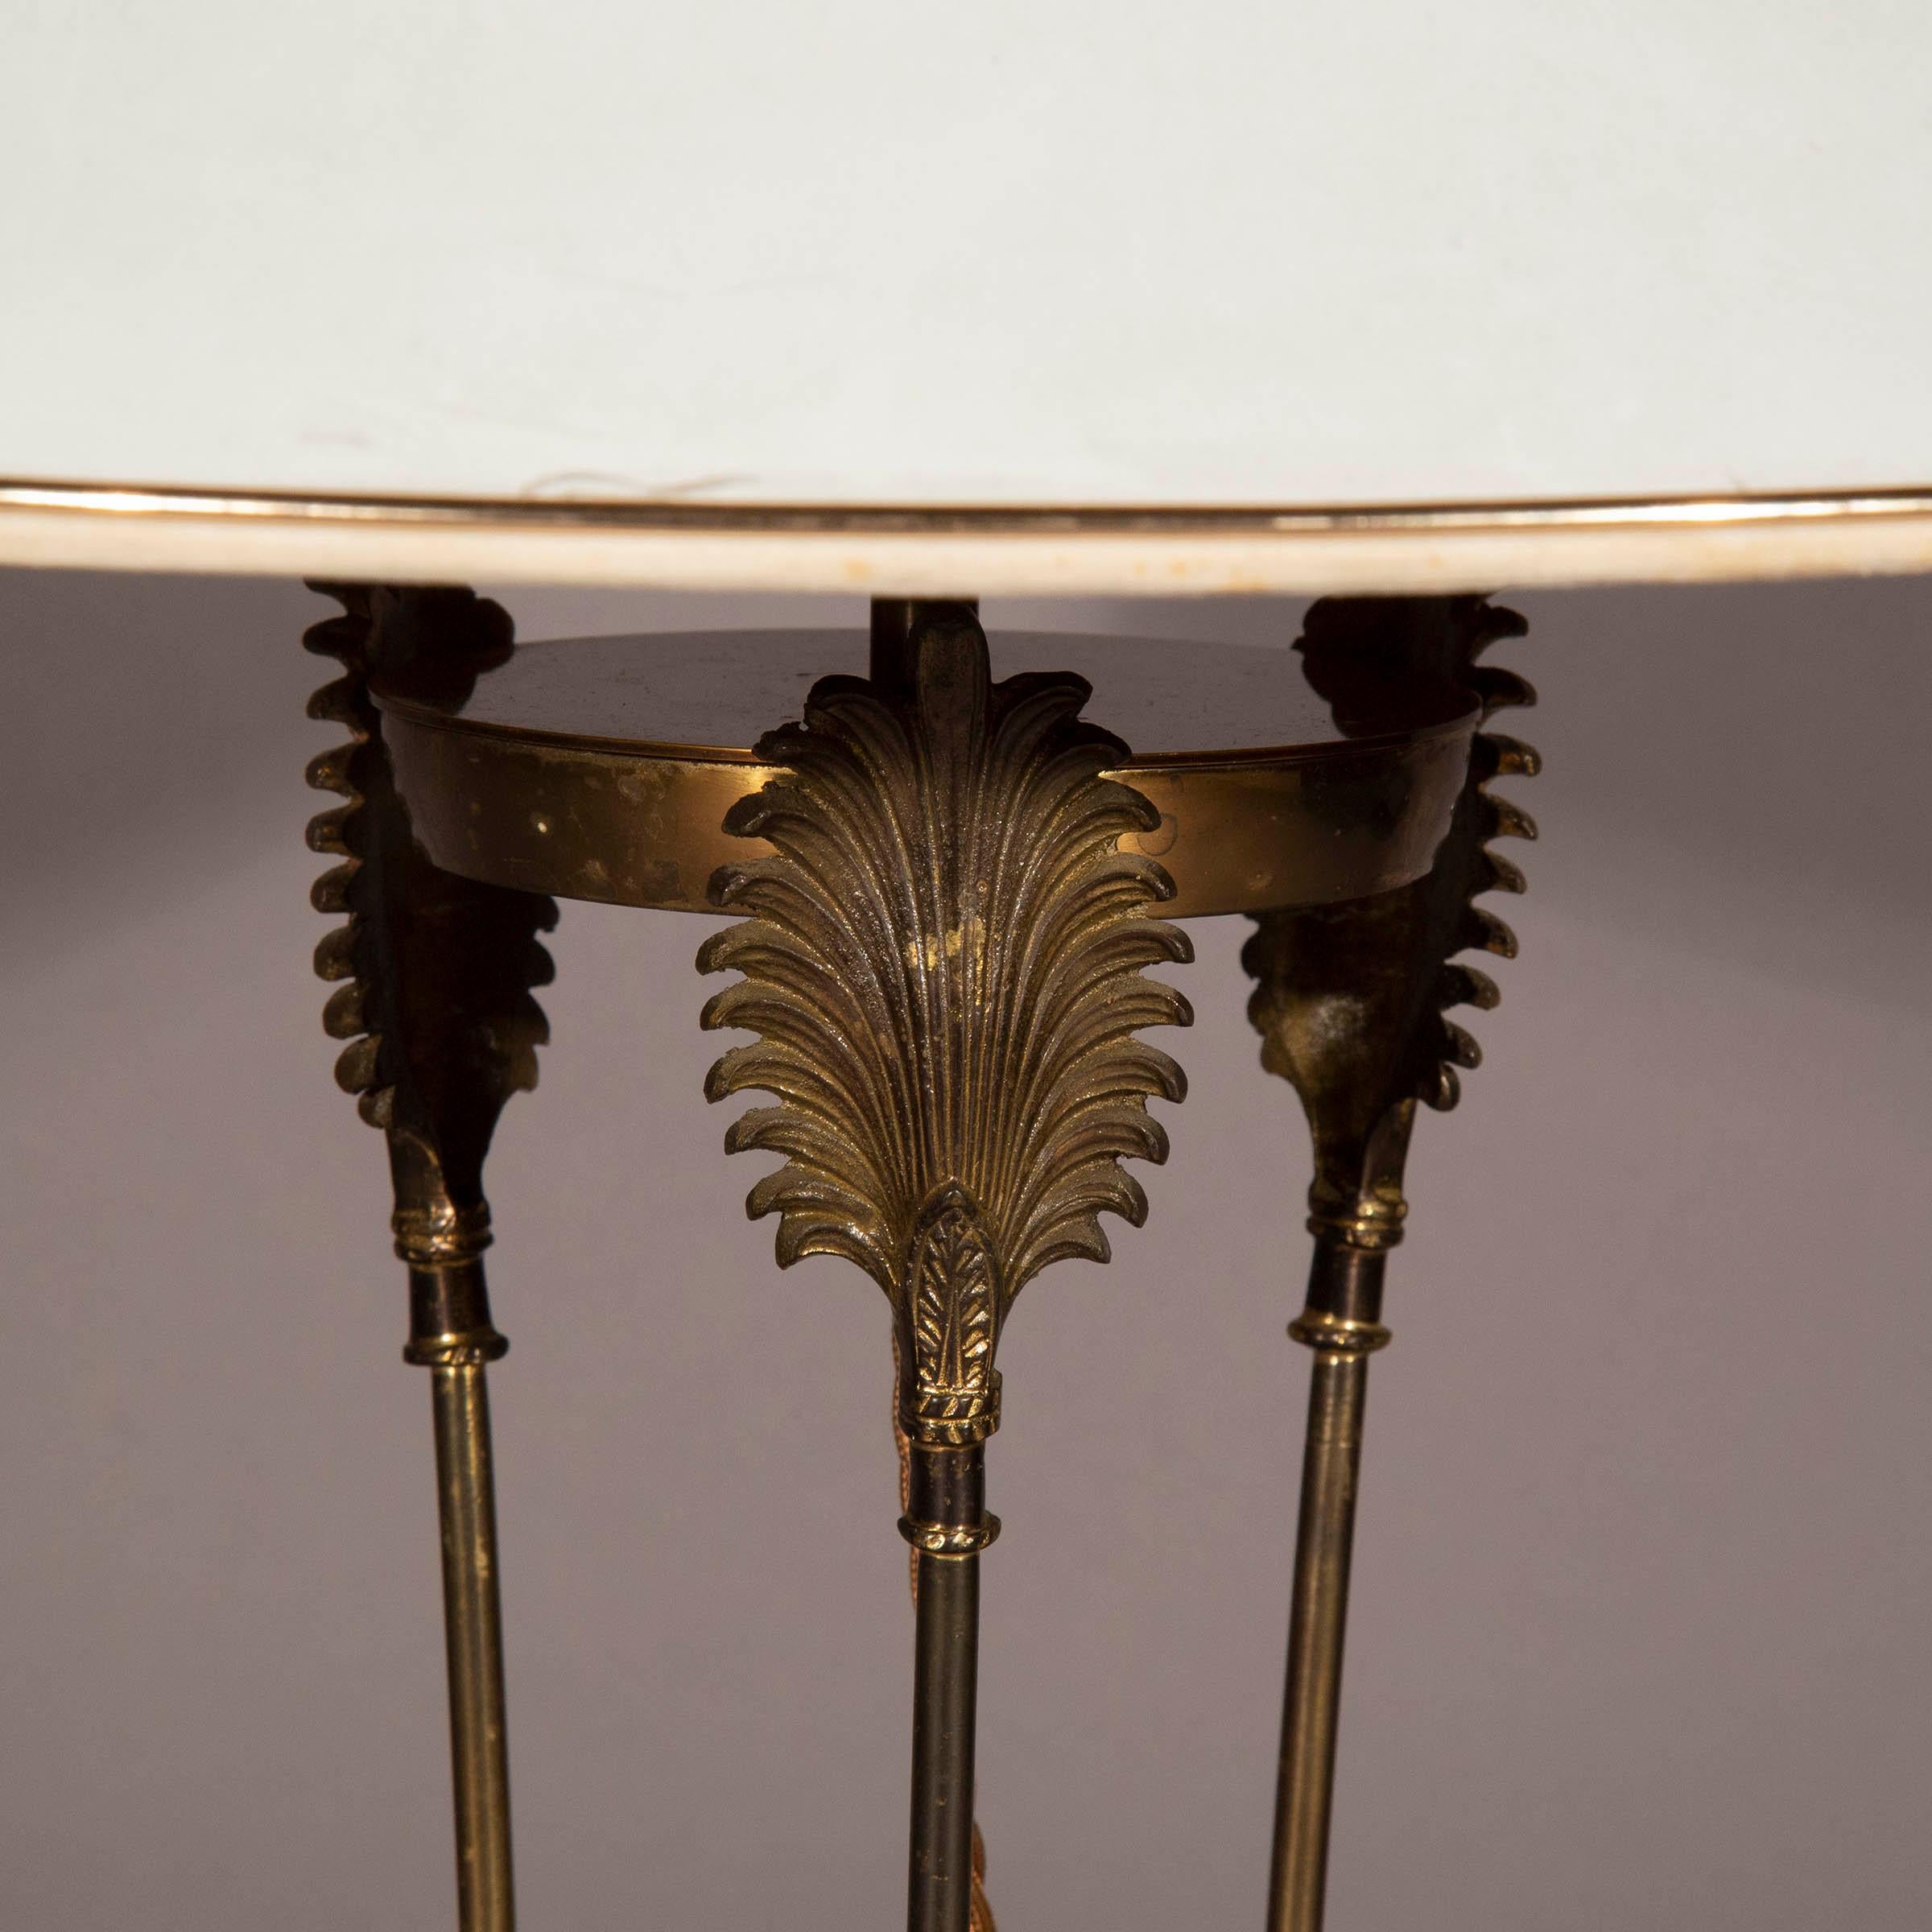 Lampe de table 'Athénienne' en bronze dans le goût du Grand Tour. 20ème siècle.

Pourquoi nous l'aimons

Formé de trois flèches, ce design/One dérive des trépieds sacrificiels, plus tard connus sous le nom d'athéniennes, qui étaient utilisés dans la